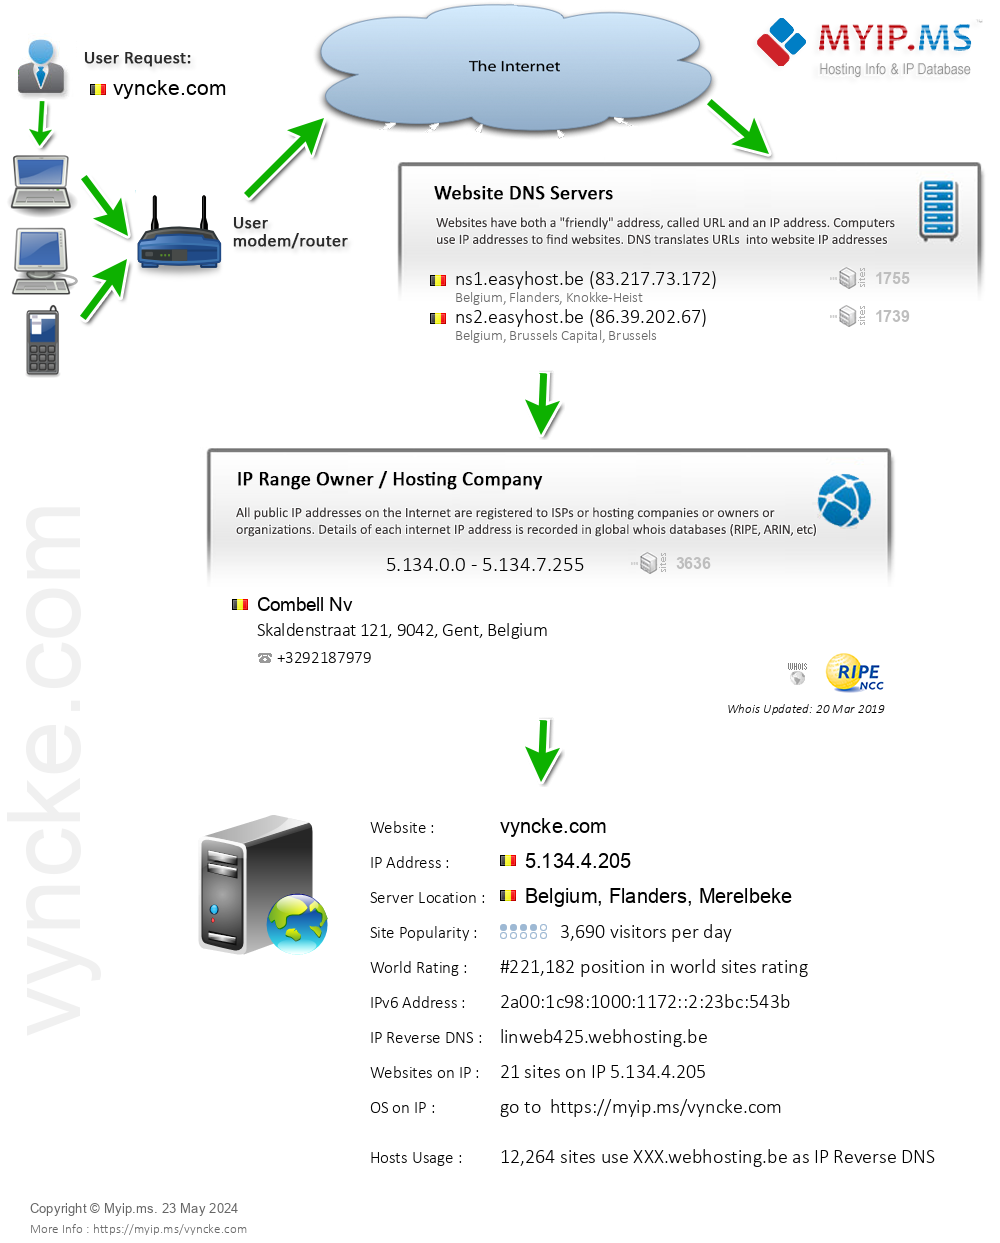 Vyncke.com - Website Hosting Visual IP Diagram